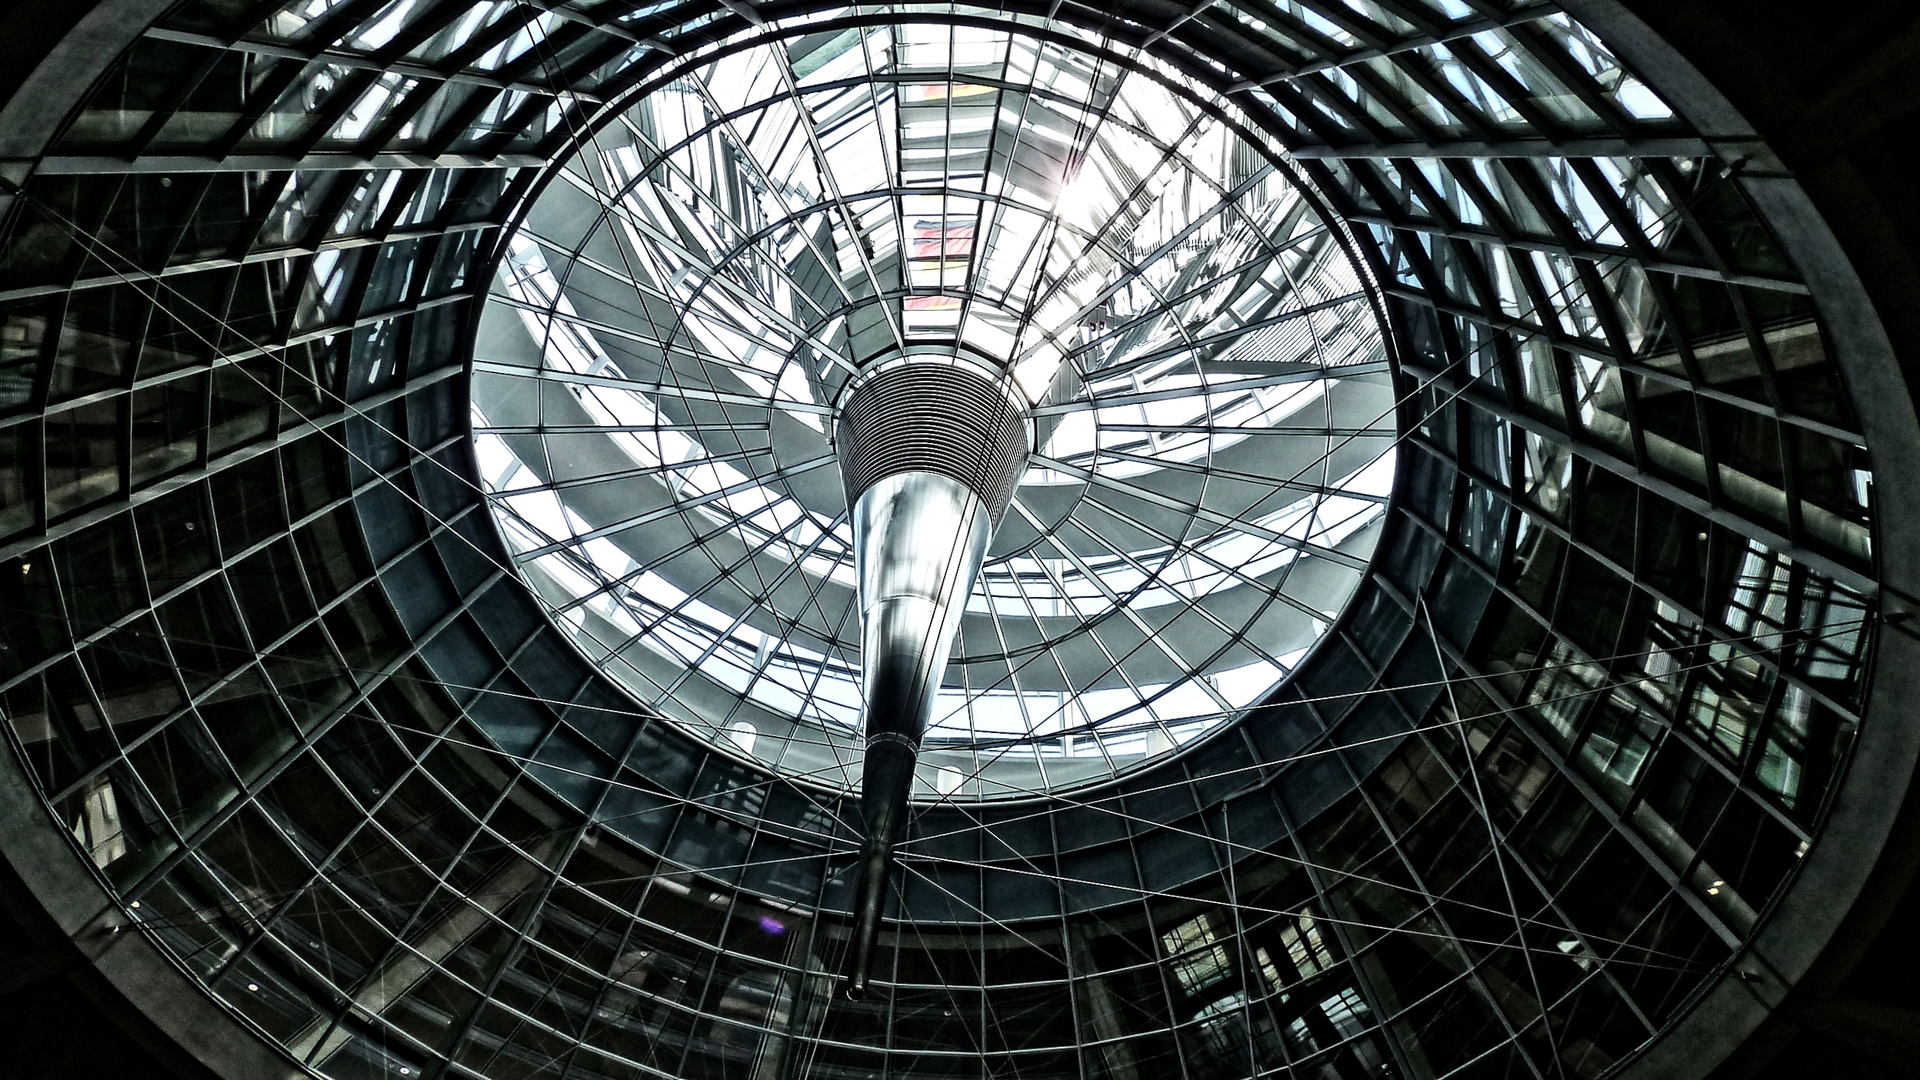 Das Sonnenschutzelement im Reichstagsbebäude in Berlin